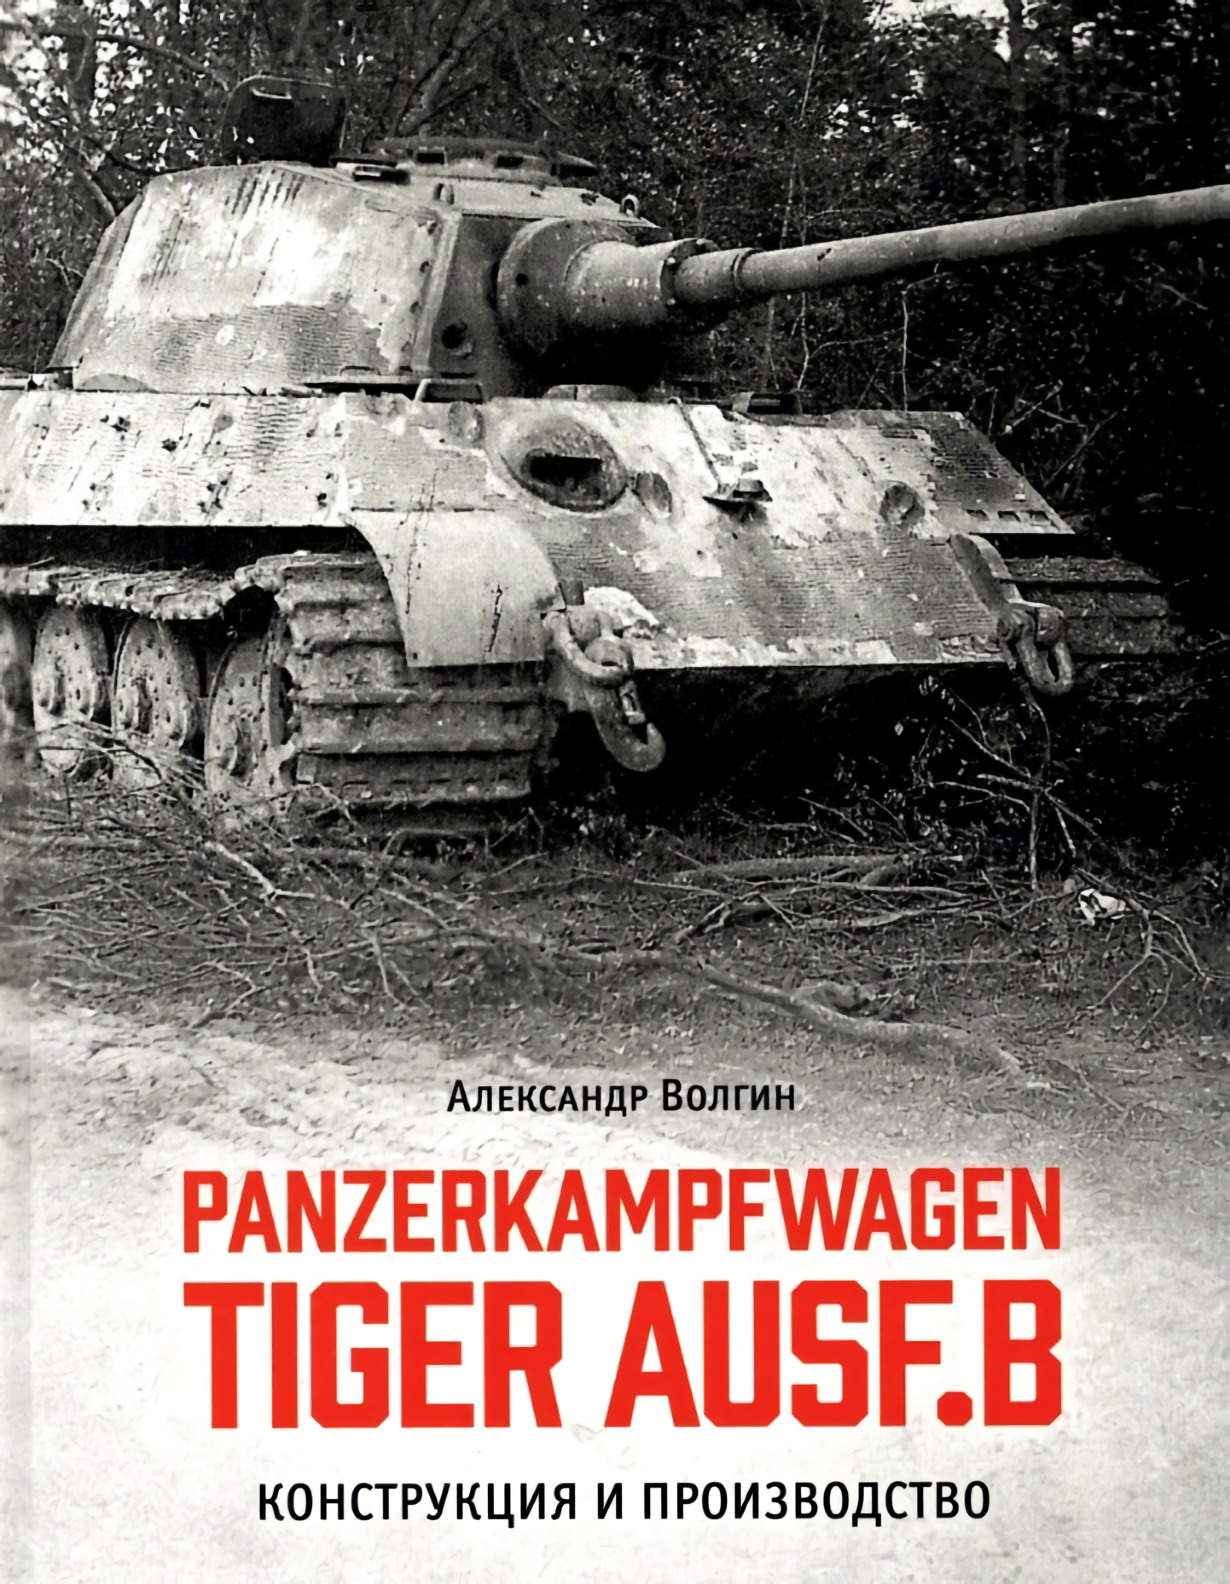 Panzerkampfwagen TIGER AUSF. B   